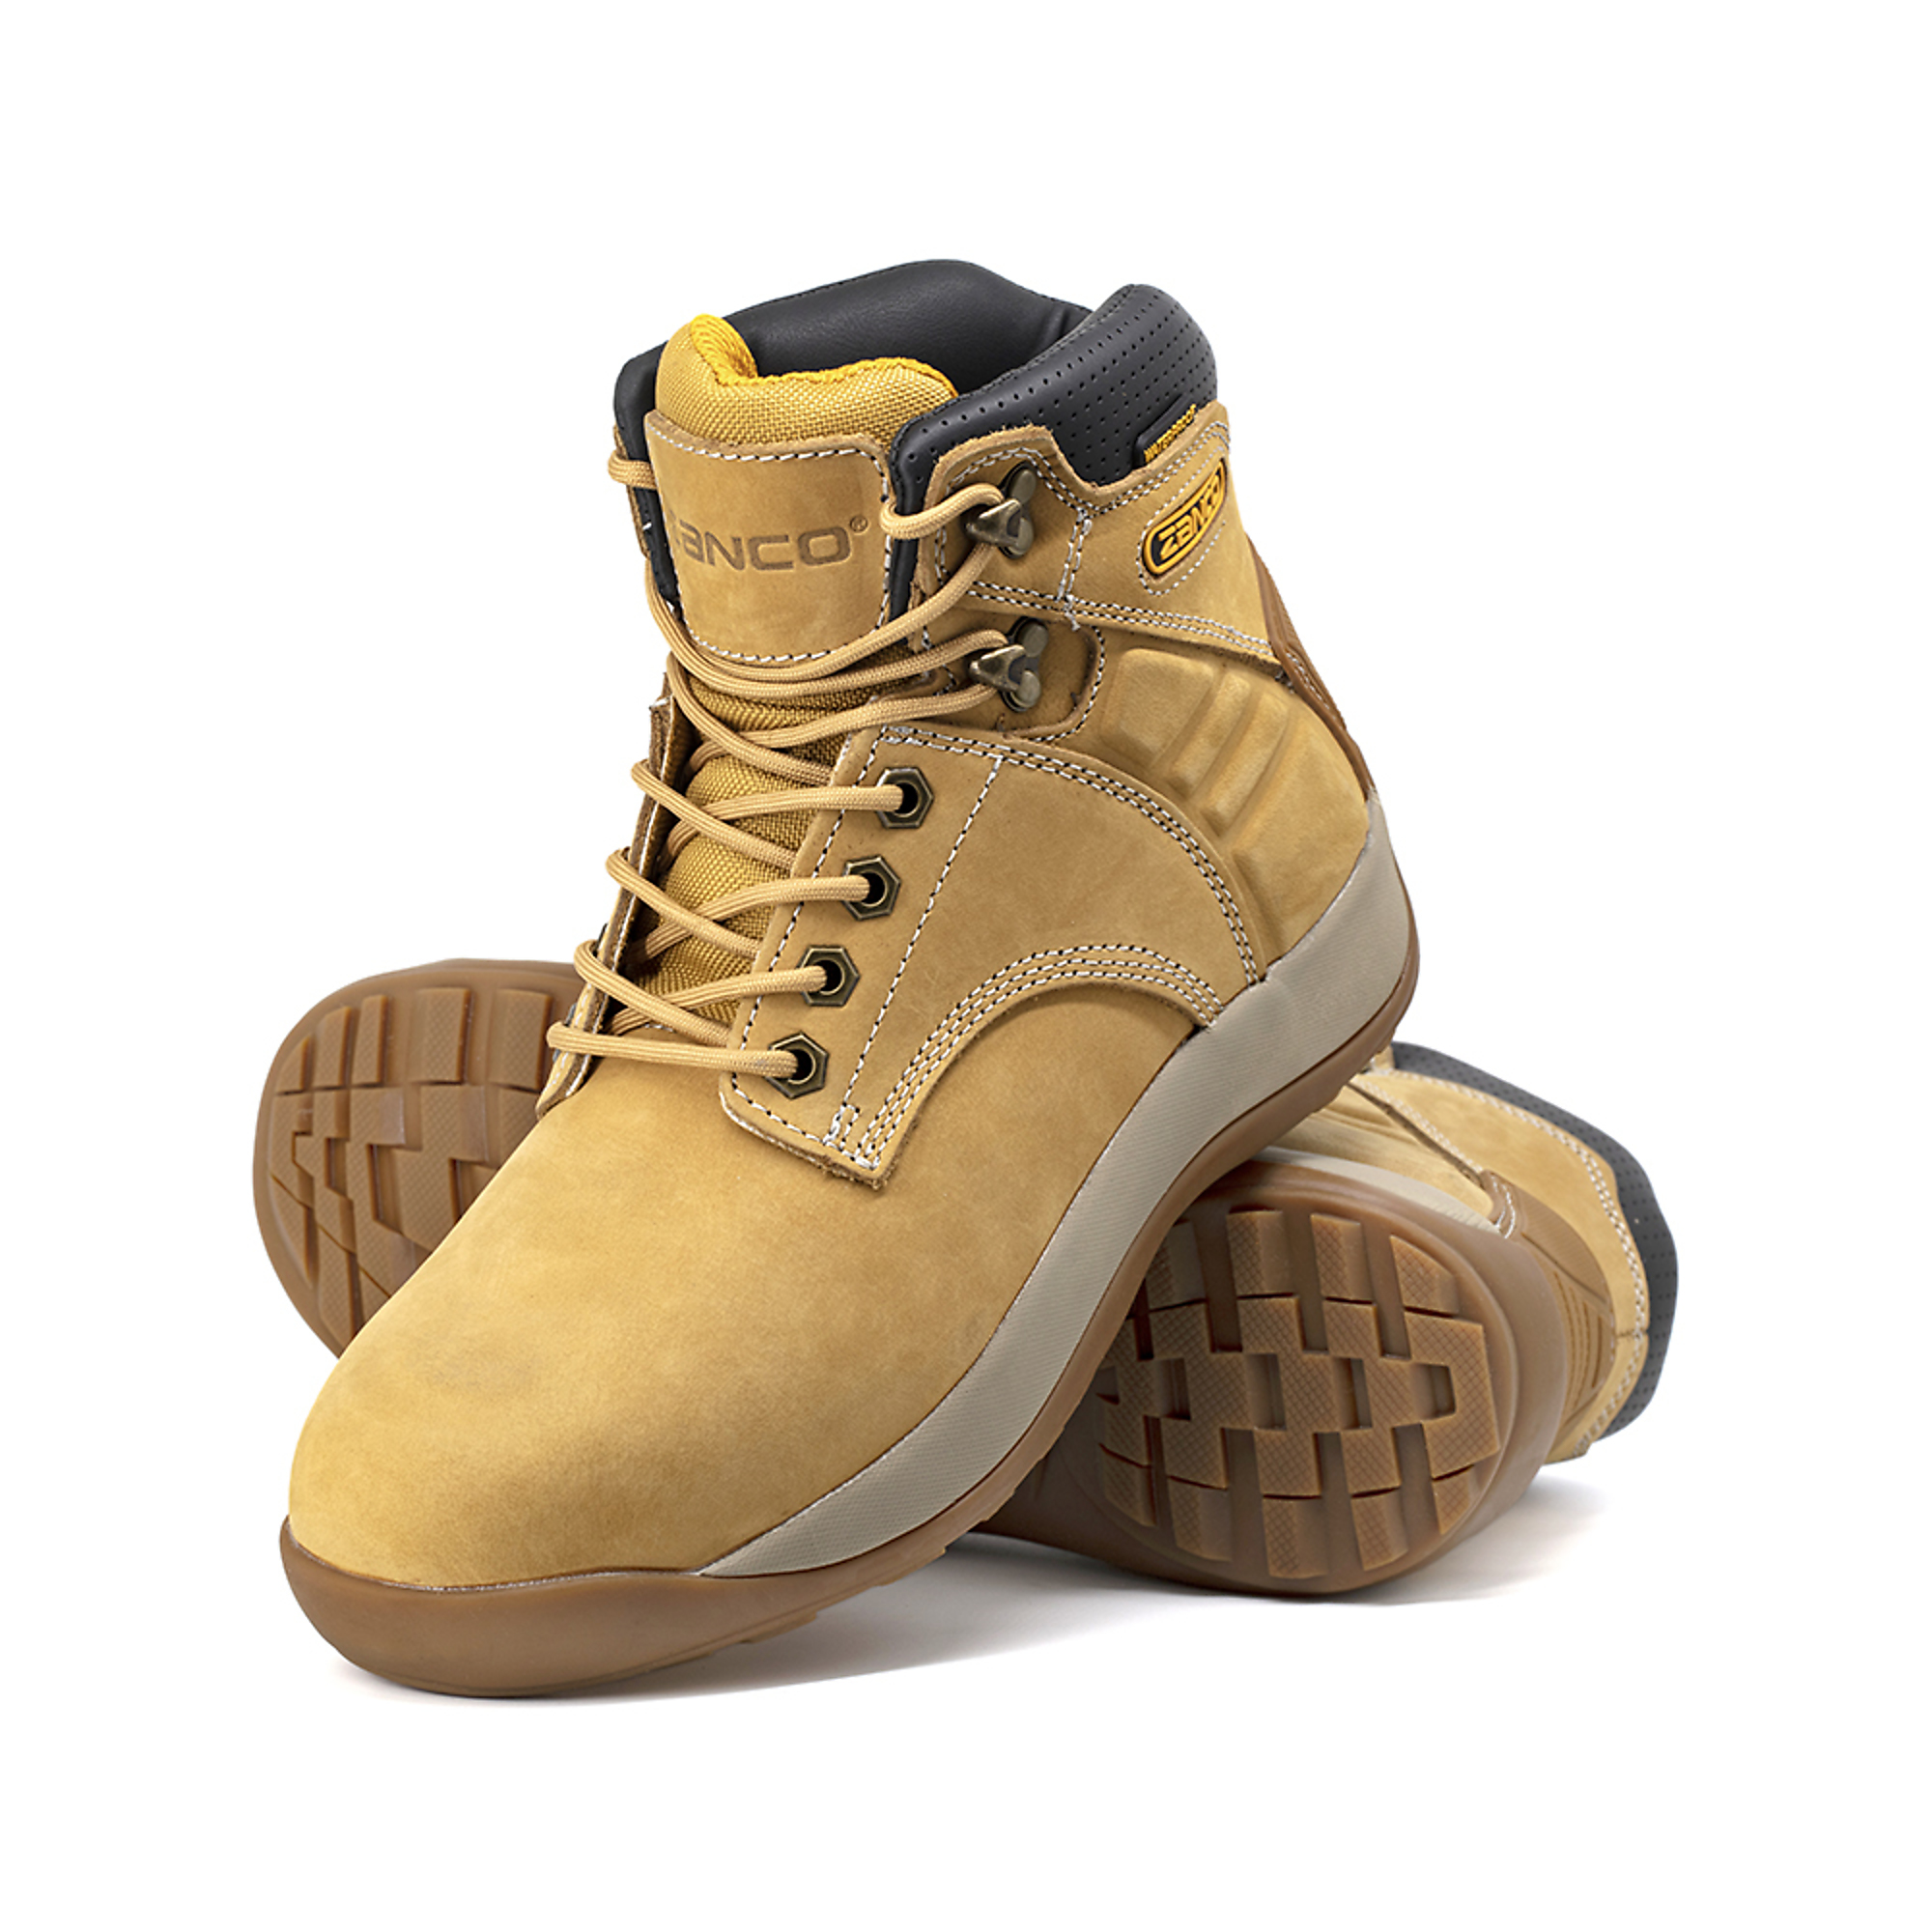 Zanco, Men's Waterproof,Steel toe,EH,Safety boots, Size 8 1/2, Width Medium, Color WHEAT, Model 8236-16-8.5